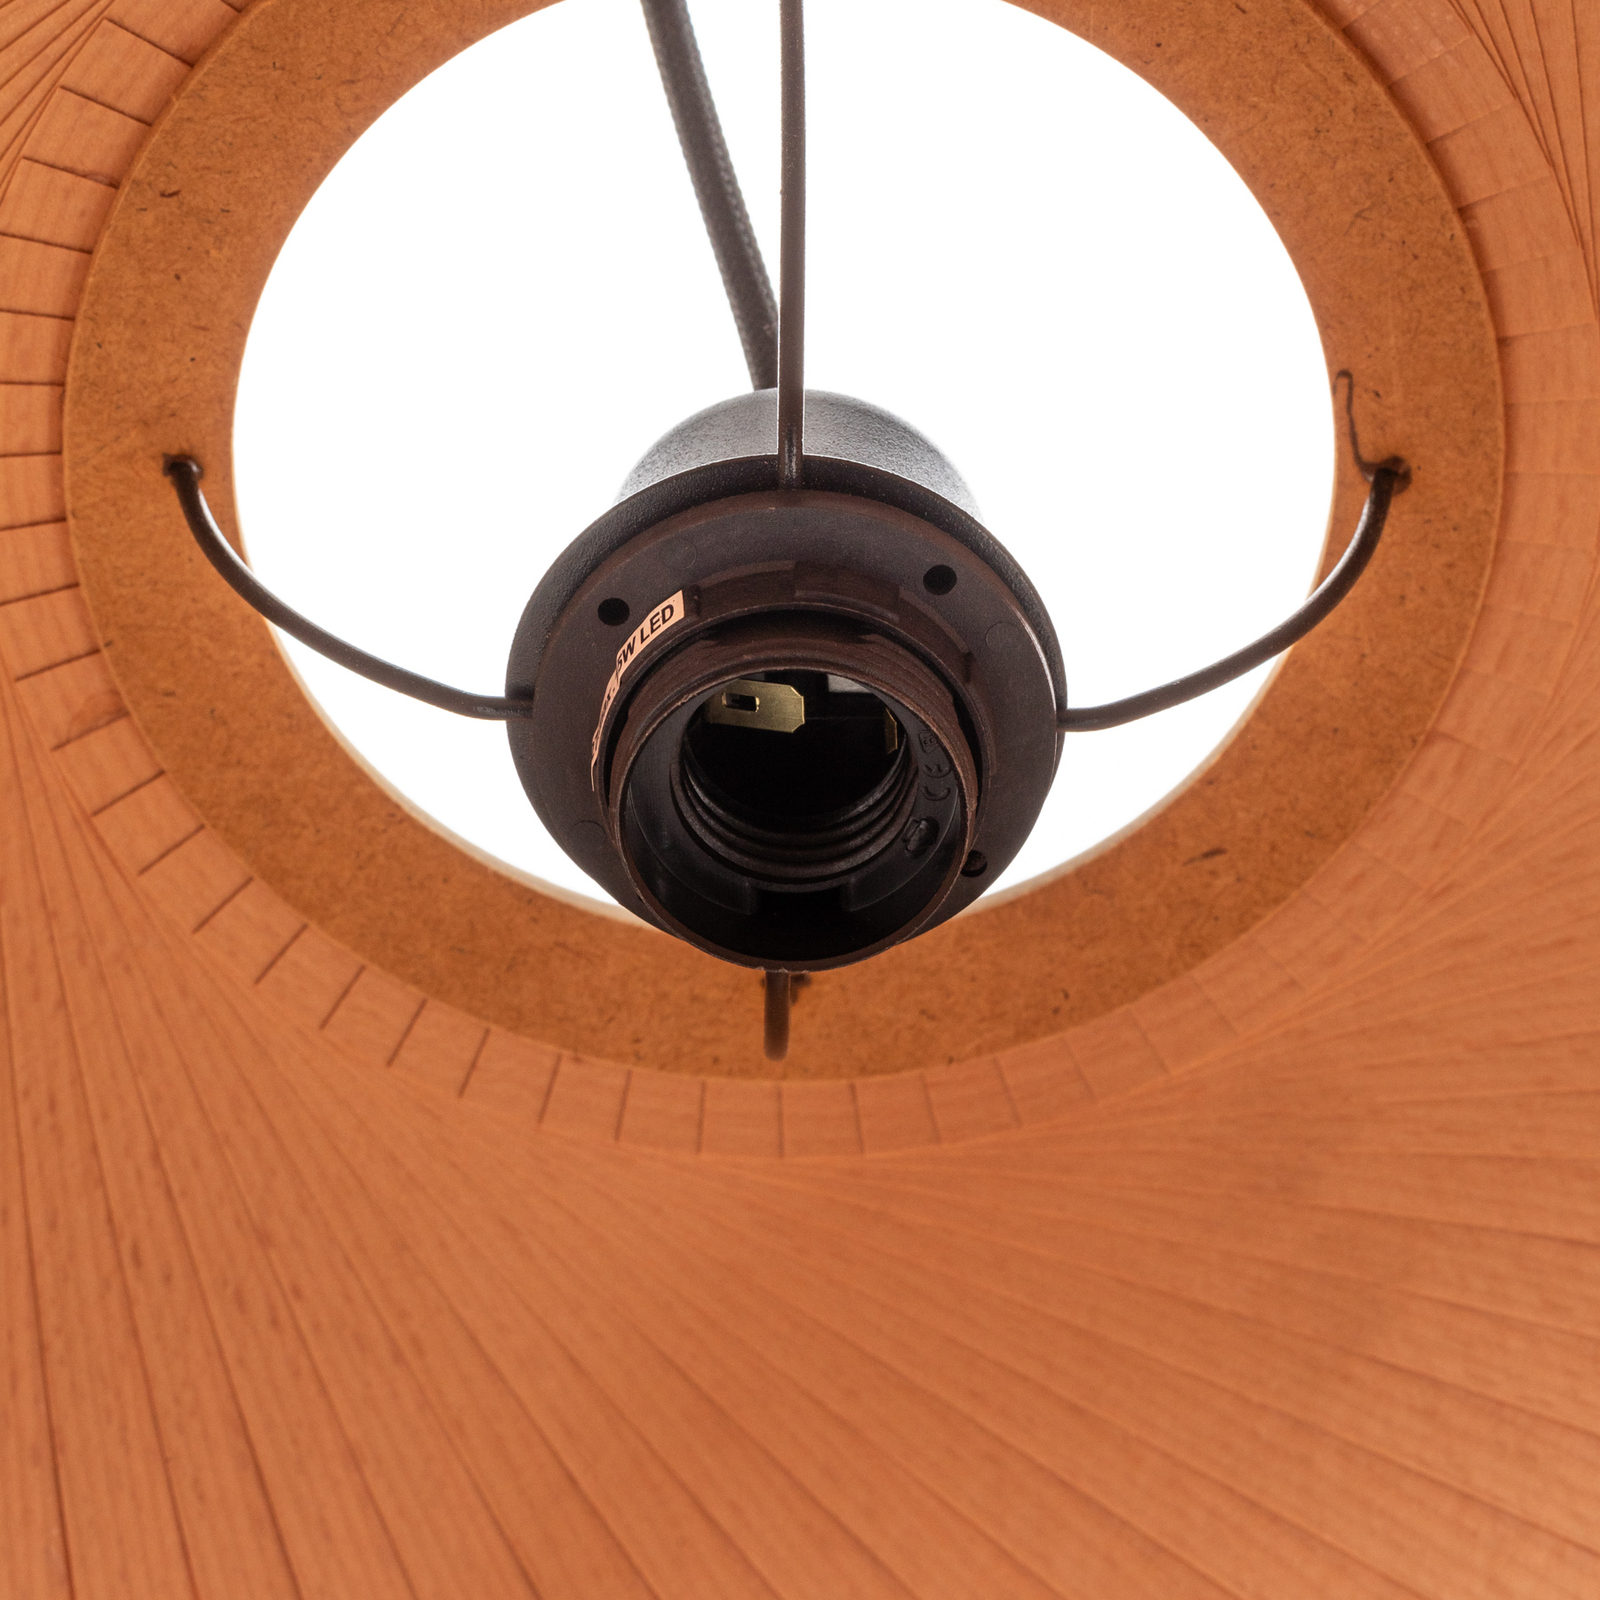 Envostar n.n hanglamp van hout, Ø 53 cm